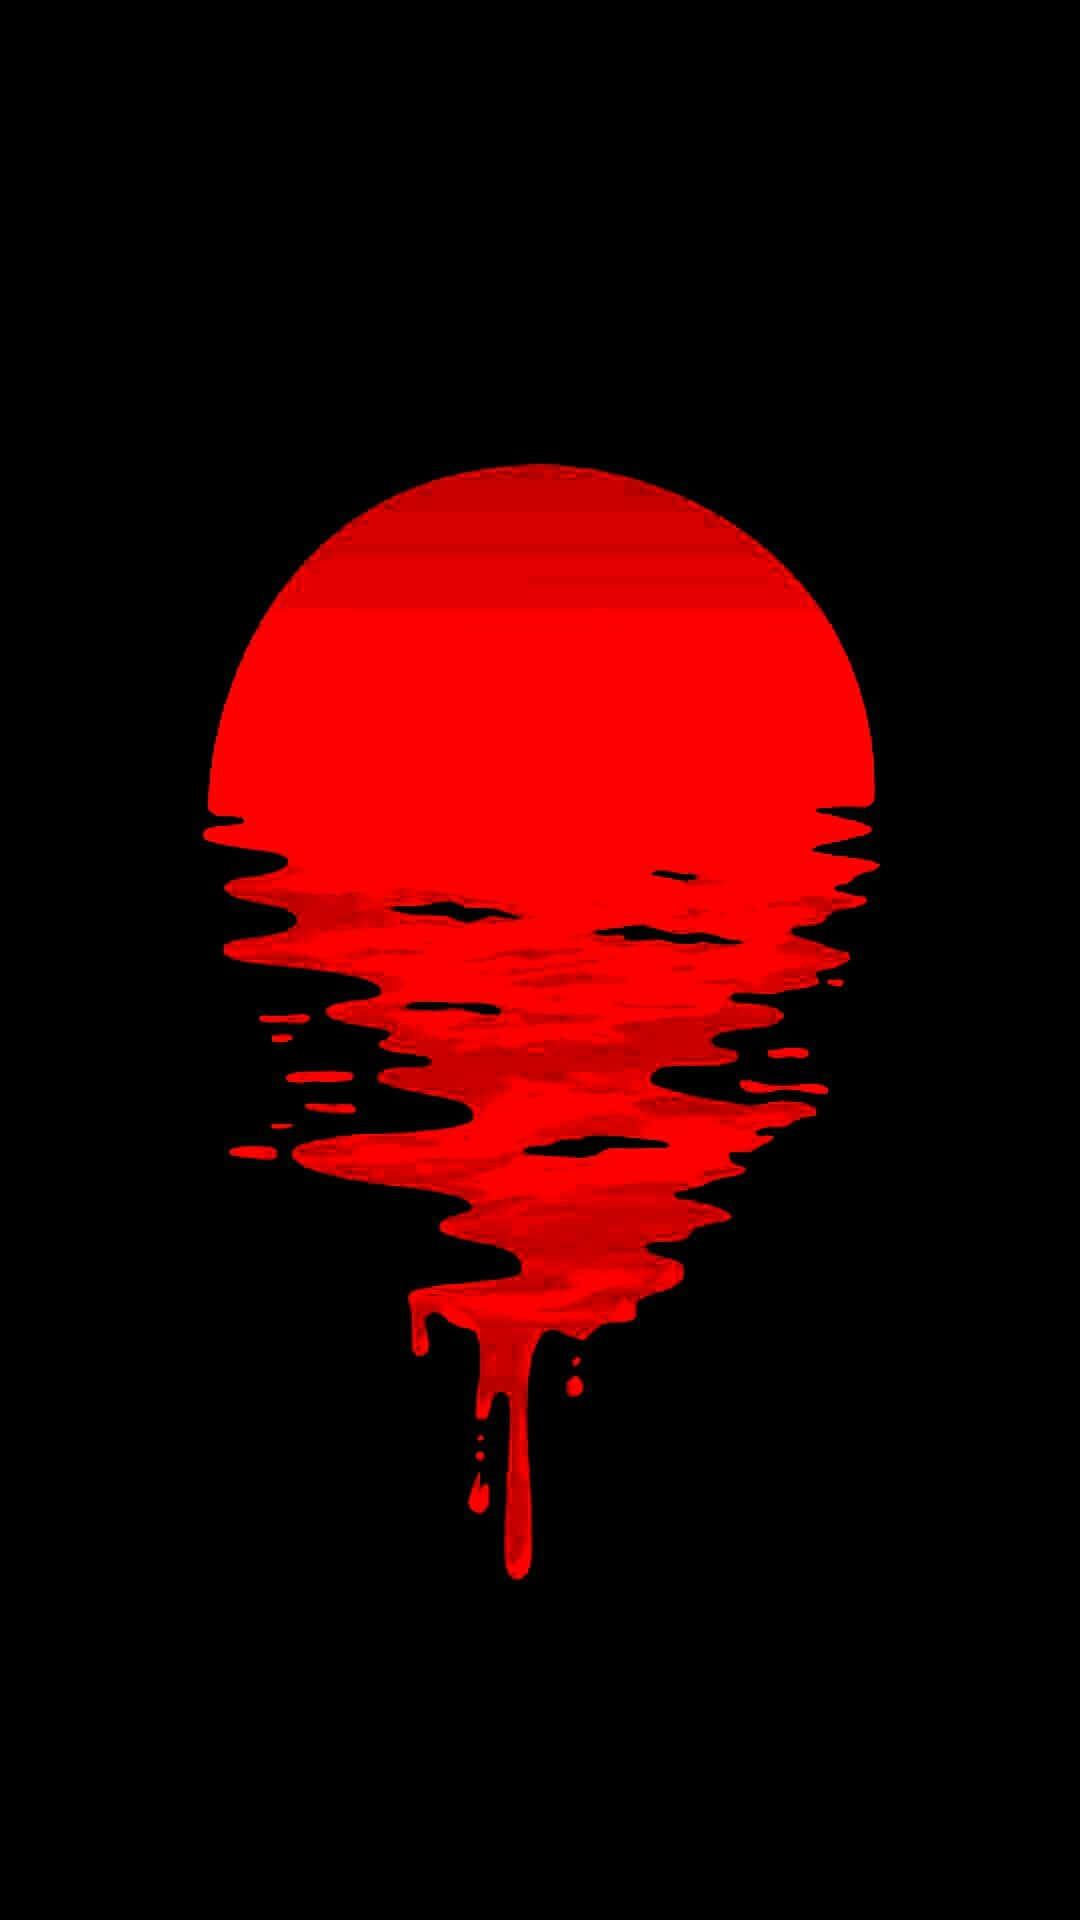 Sunset Melting Black And Red Aesthetic Digital Art Wallpaper